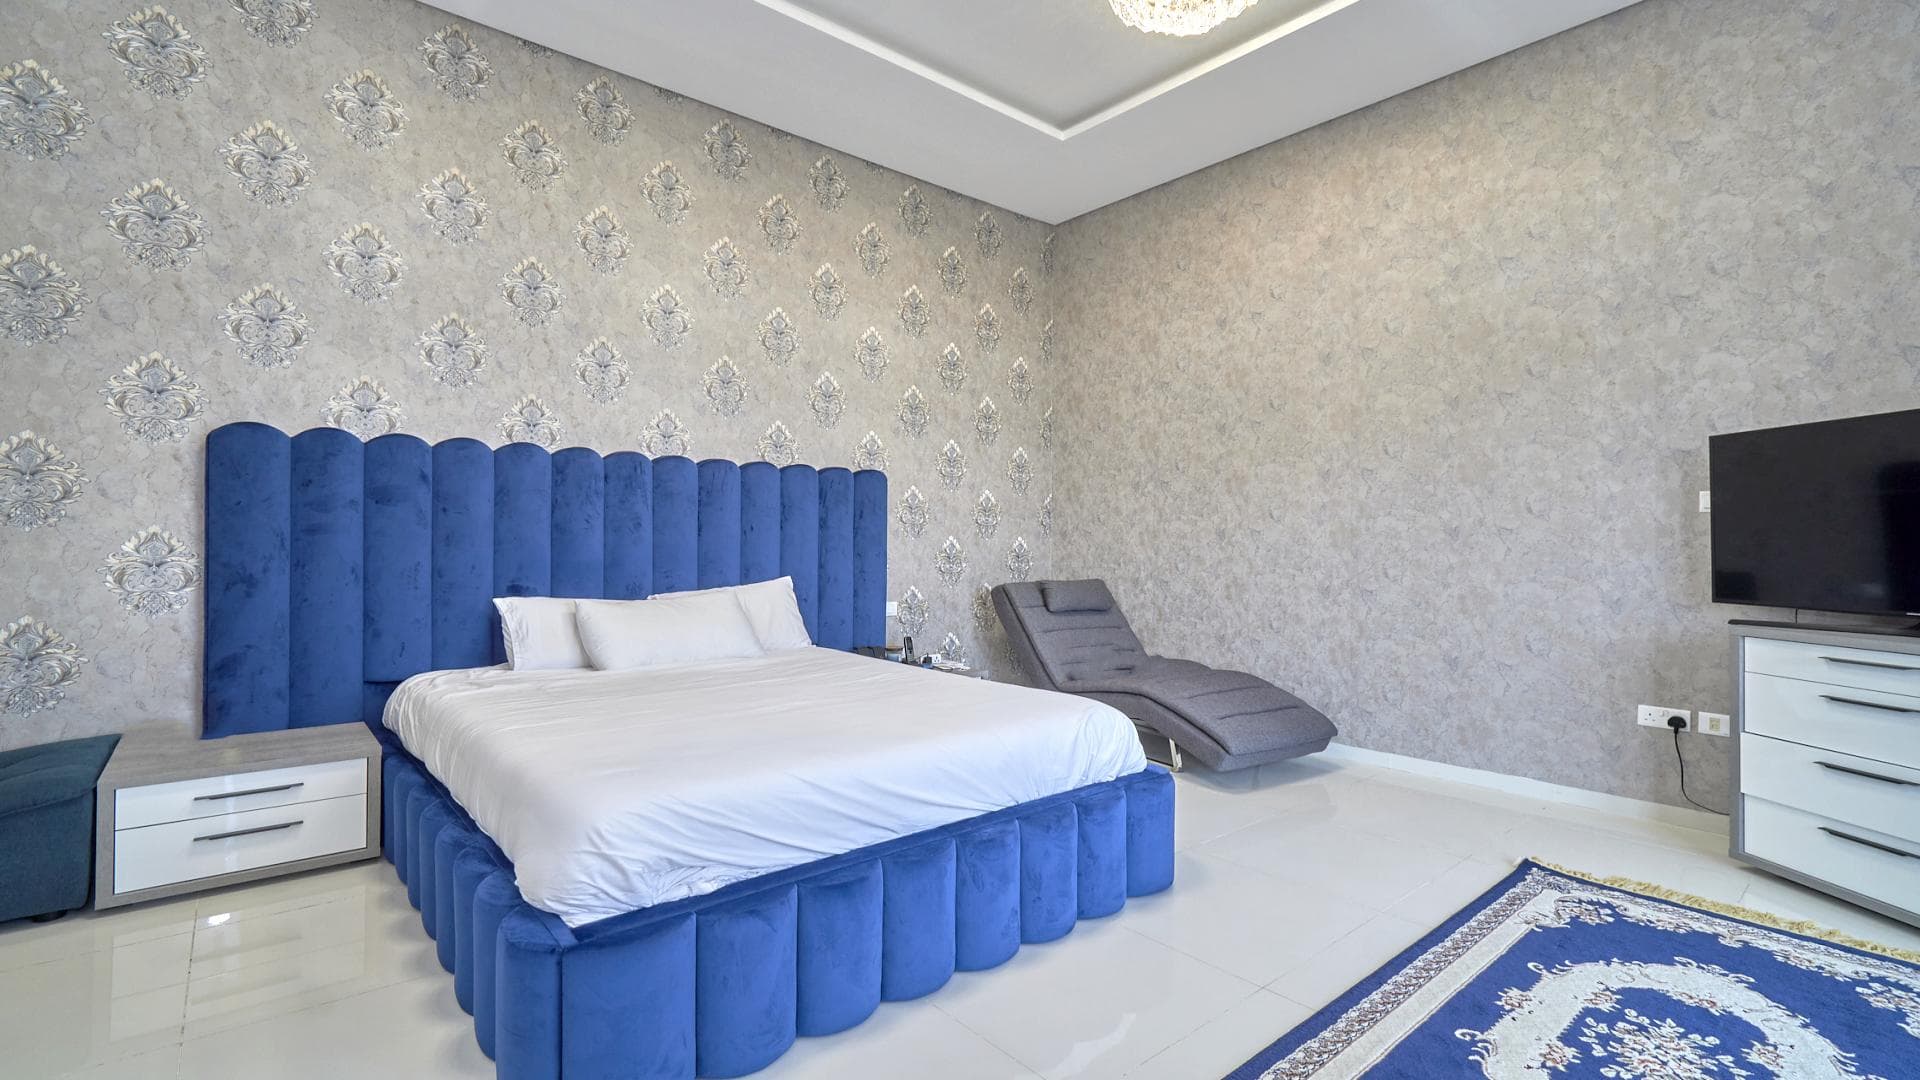 5 Bedroom Villa For Rent Rose 1 Lp35480 E8858c585dd7480.jpg